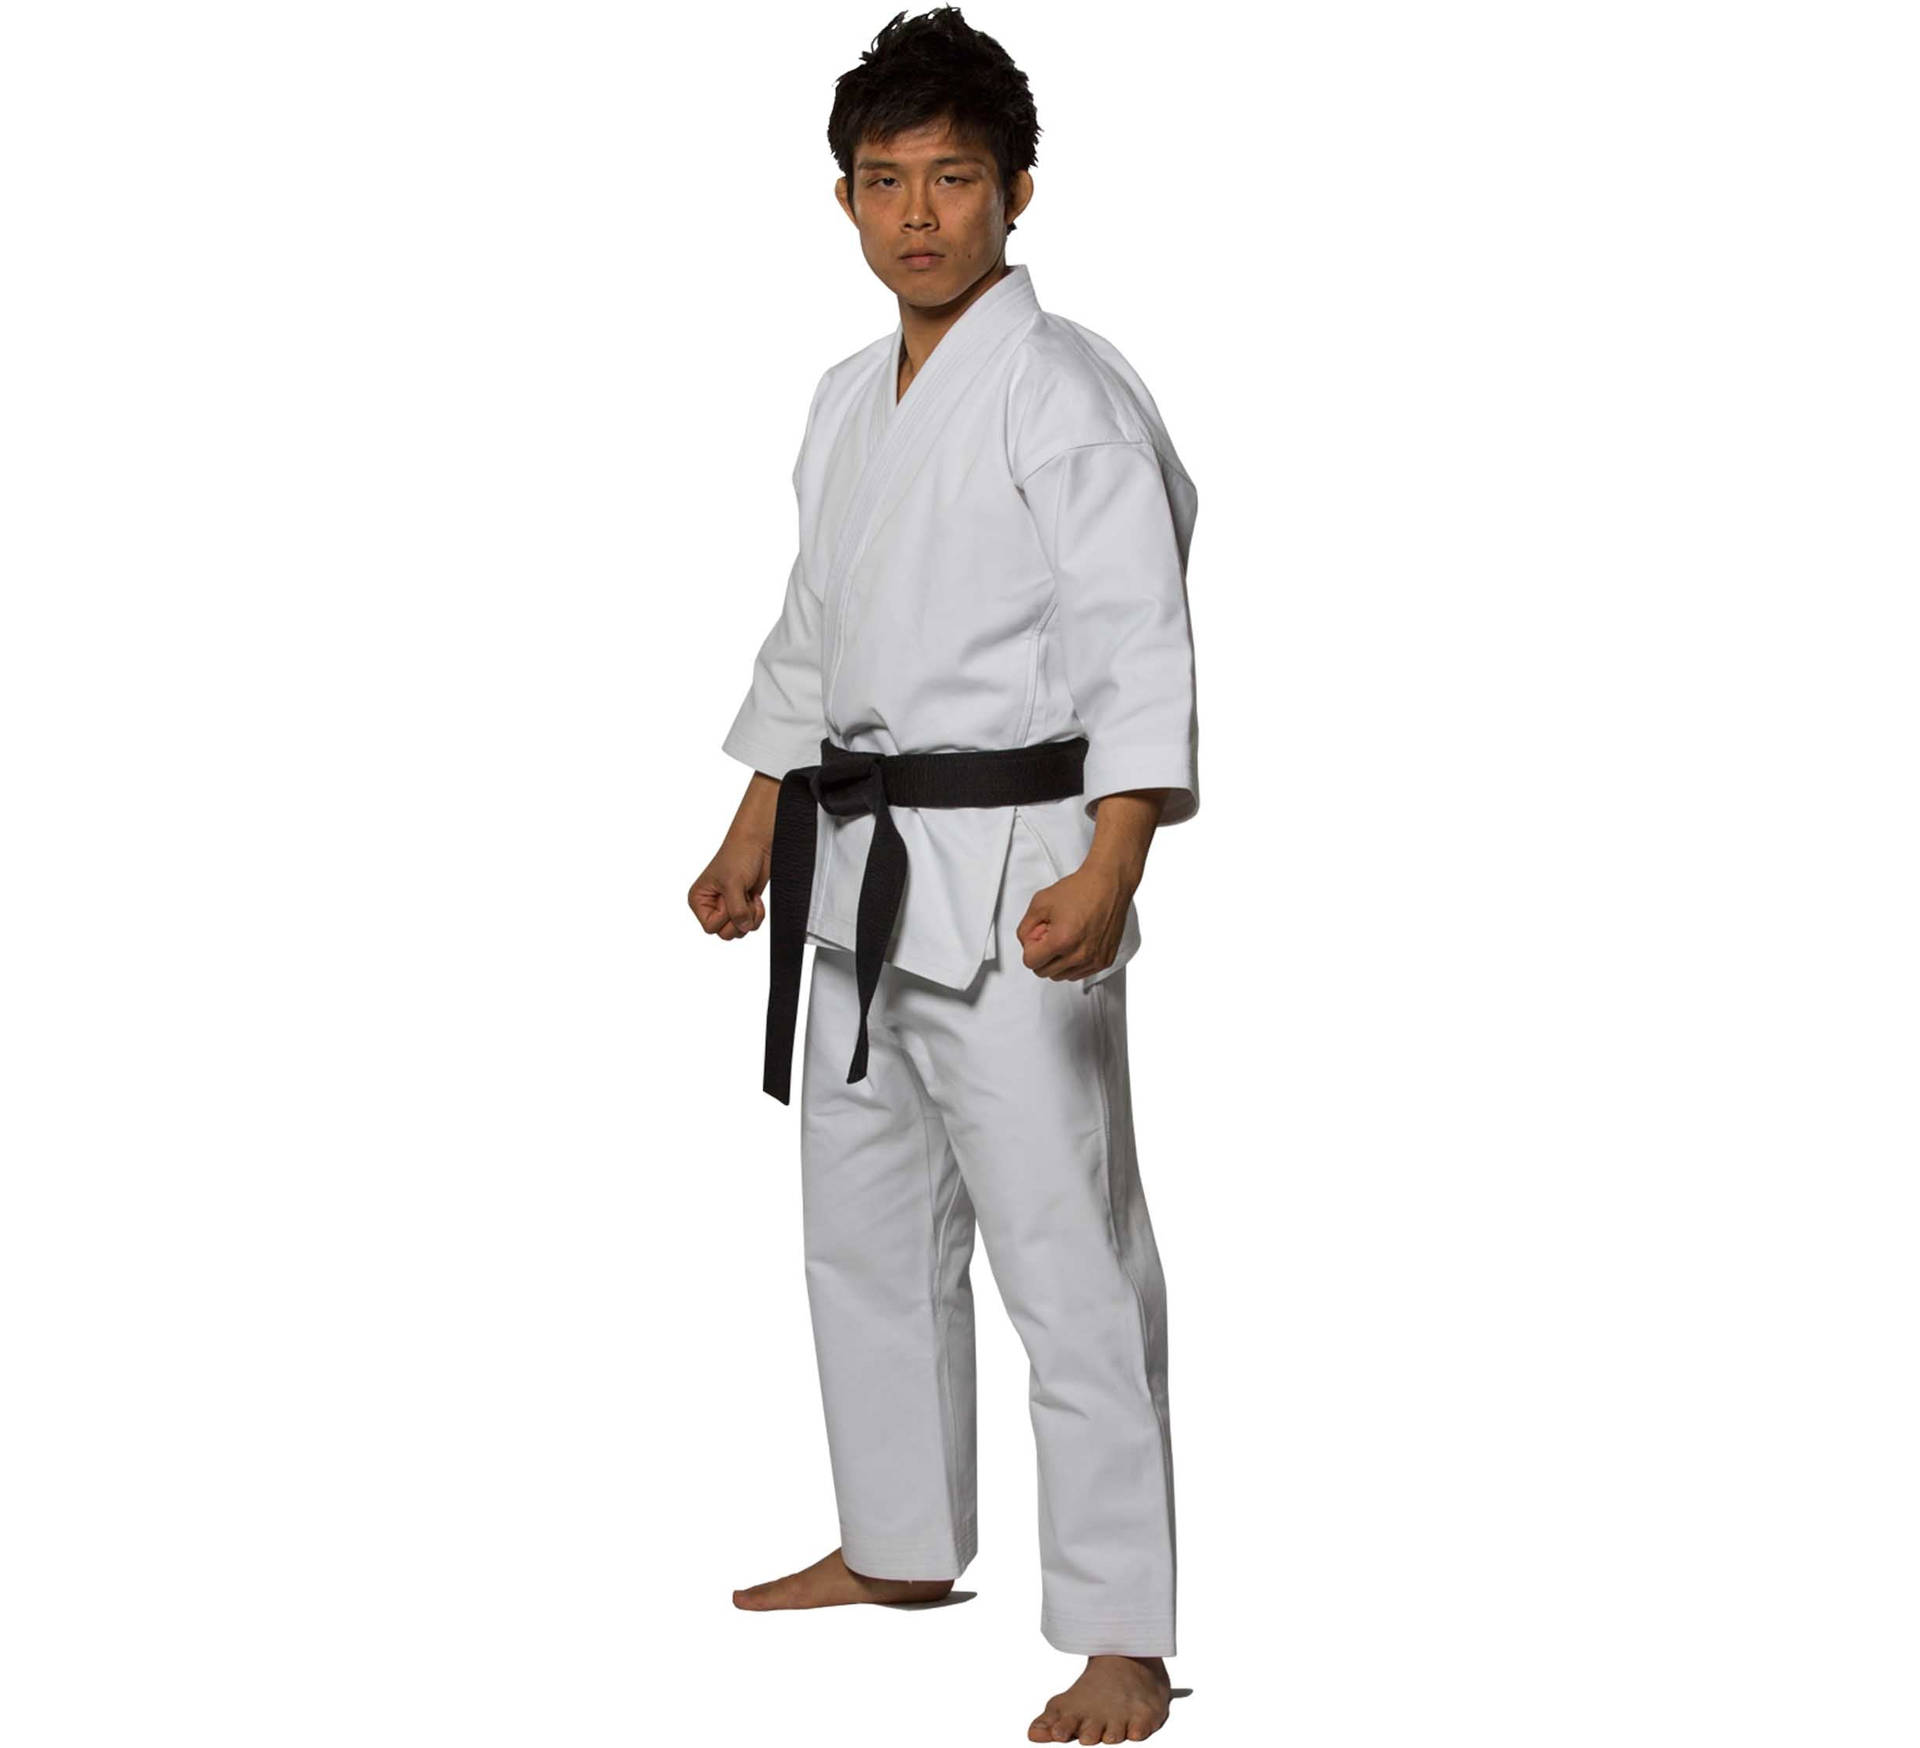 Karatemann Im Karateanzug Auf Weißem Hintergrund Wallpaper